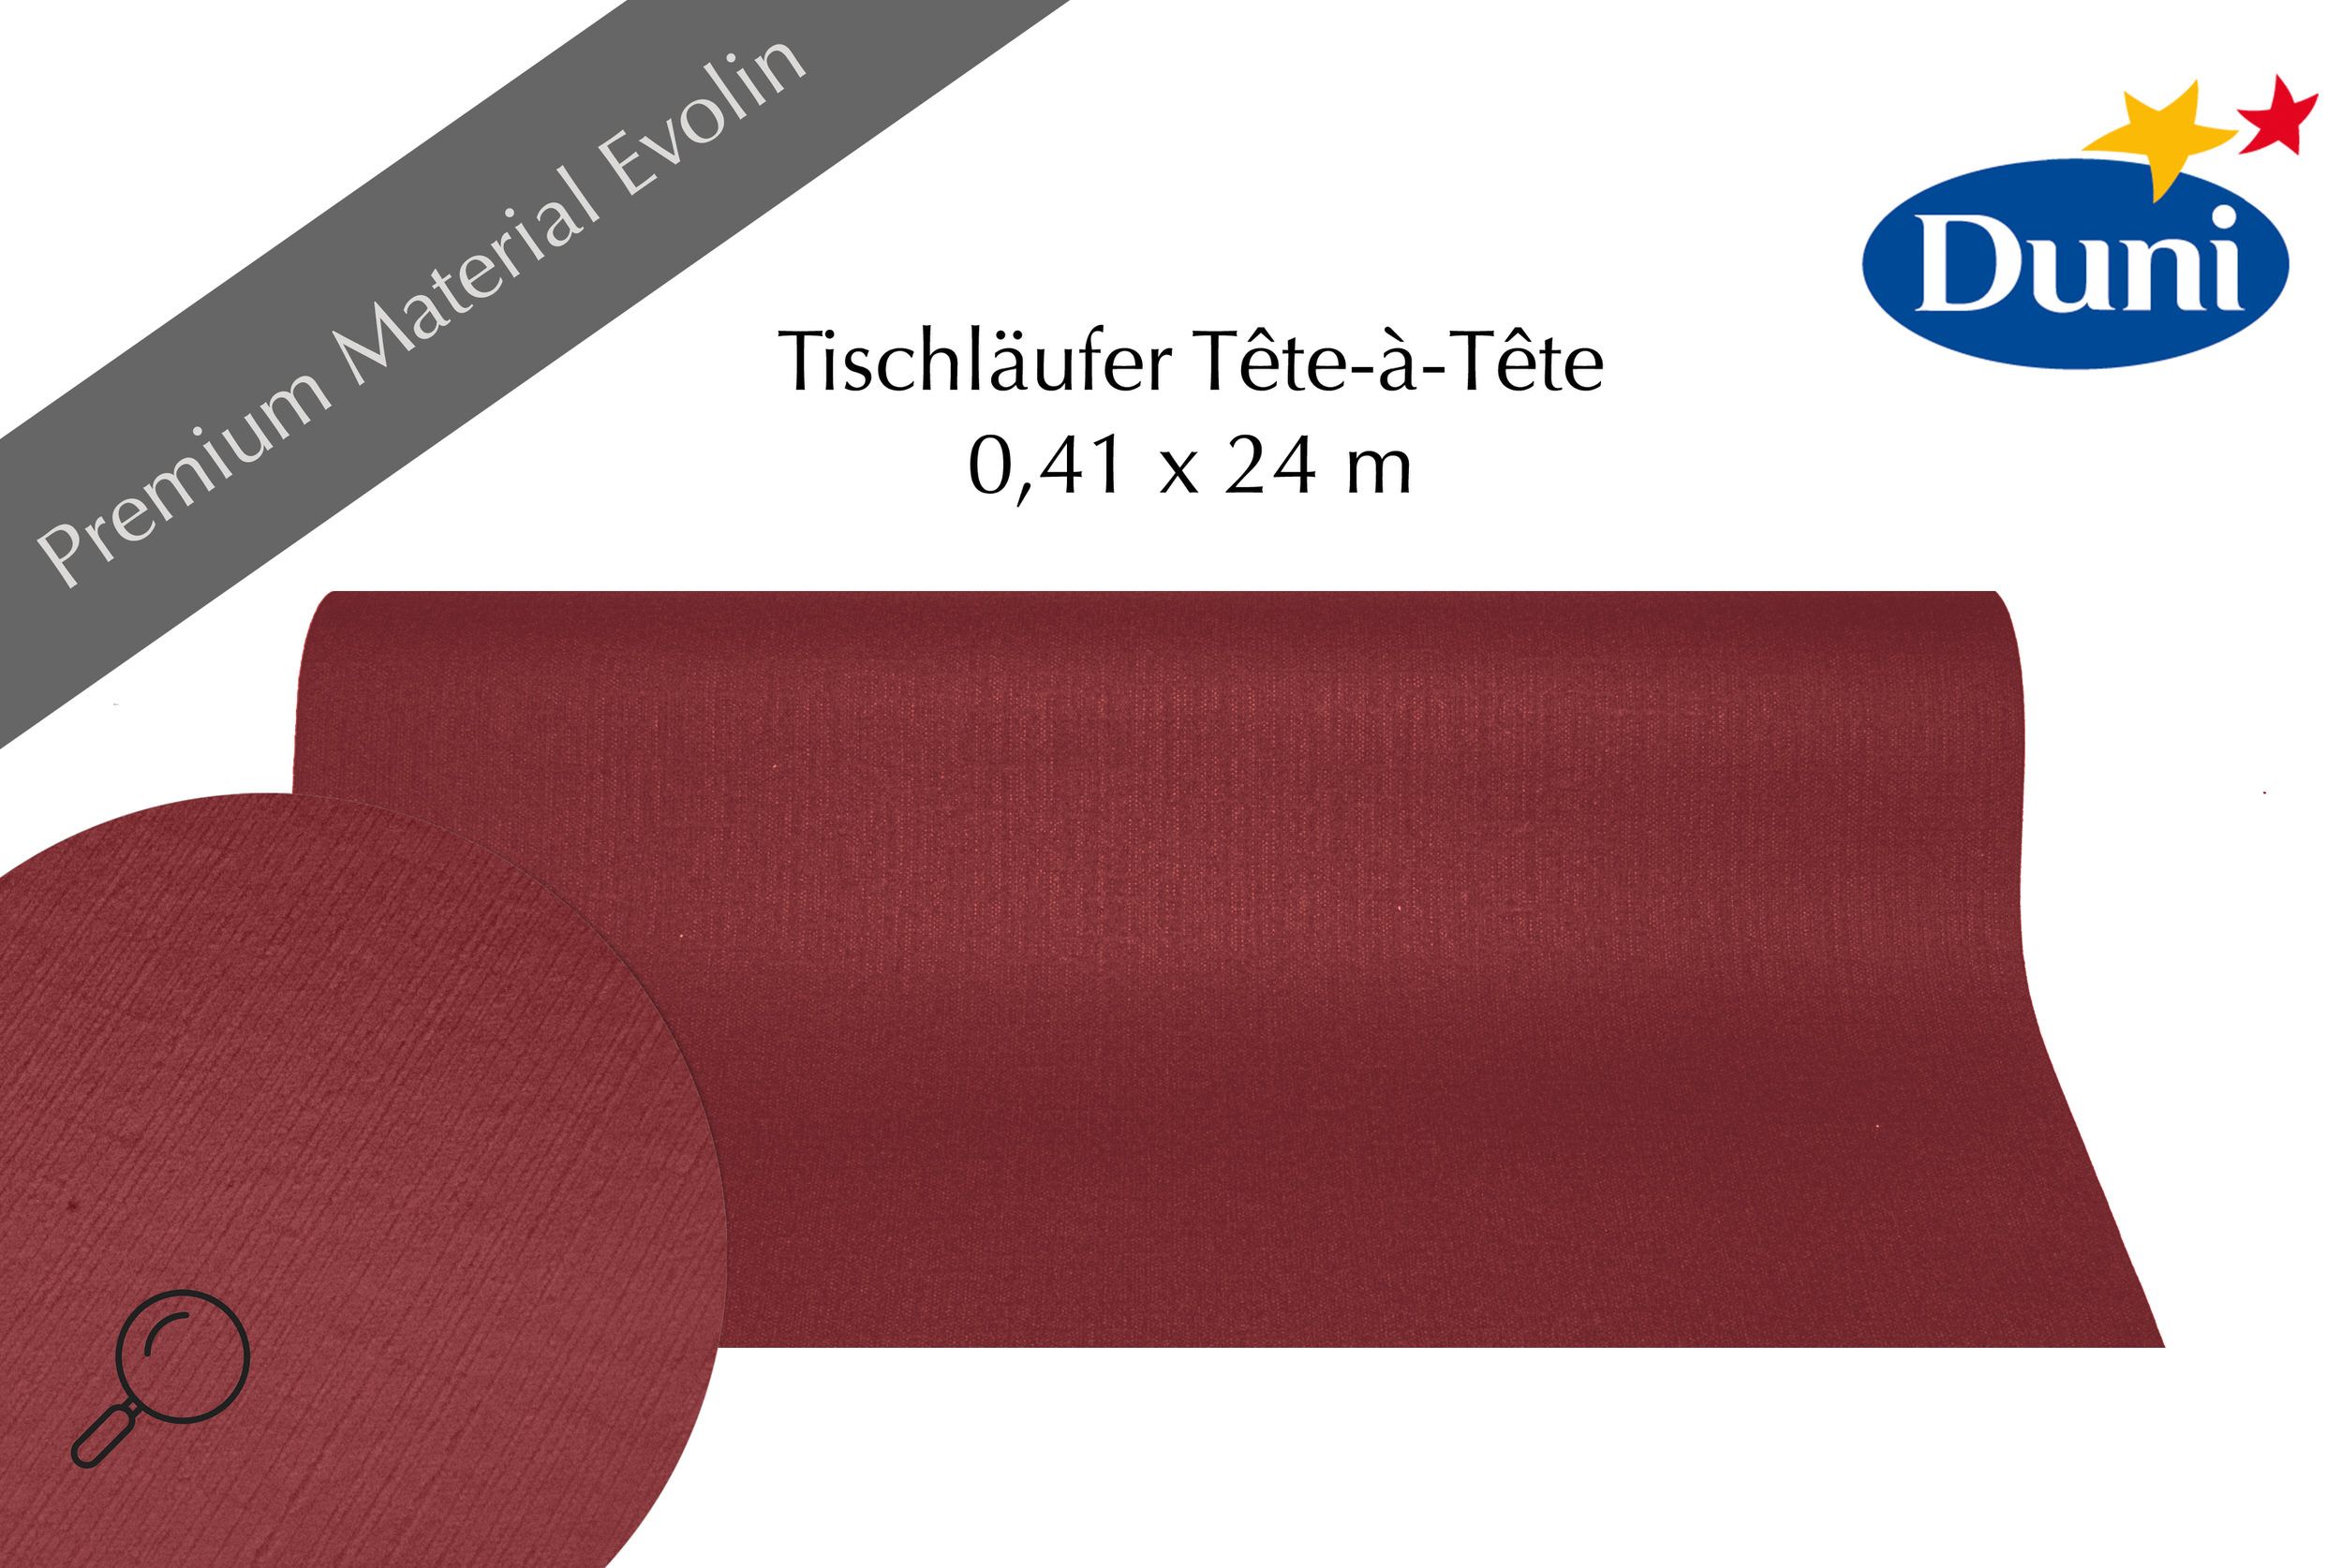 Tischläufer Duni Tête-à-Tête 0,41 x 24 m bordeaux in vielen Farben von Duni  - passend zur Saison!